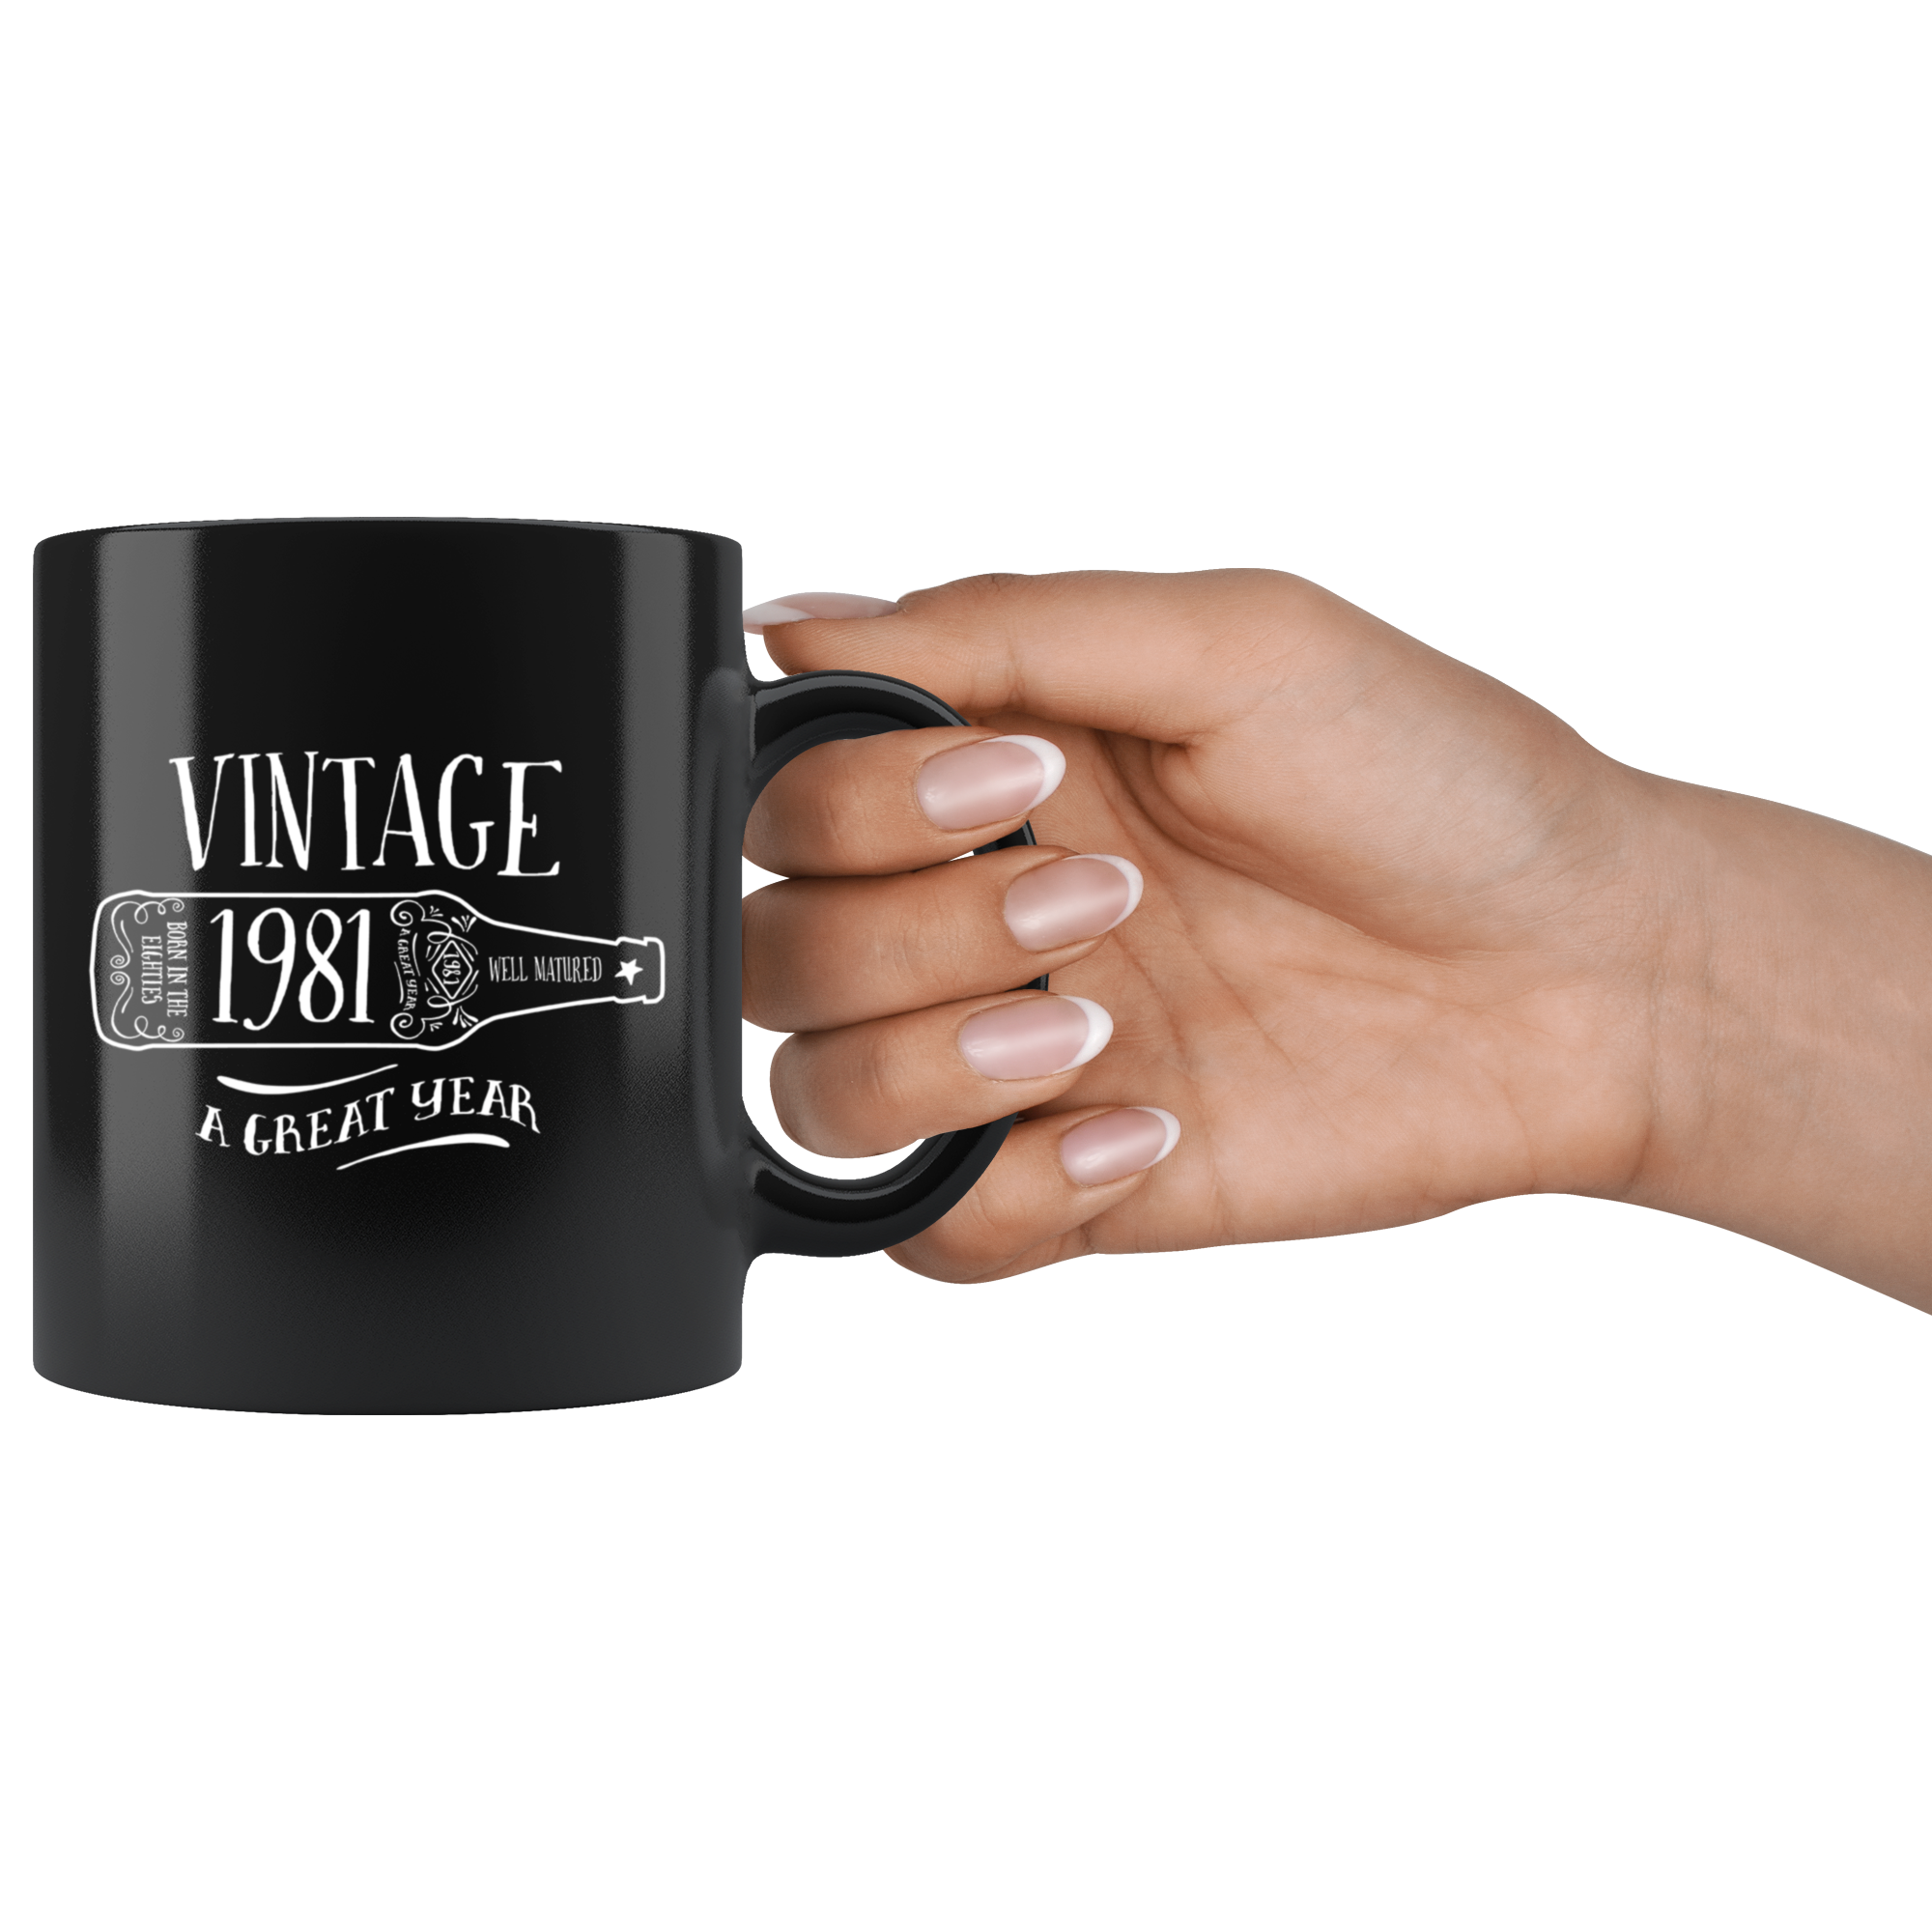 Vintage 1981 - Black Mug